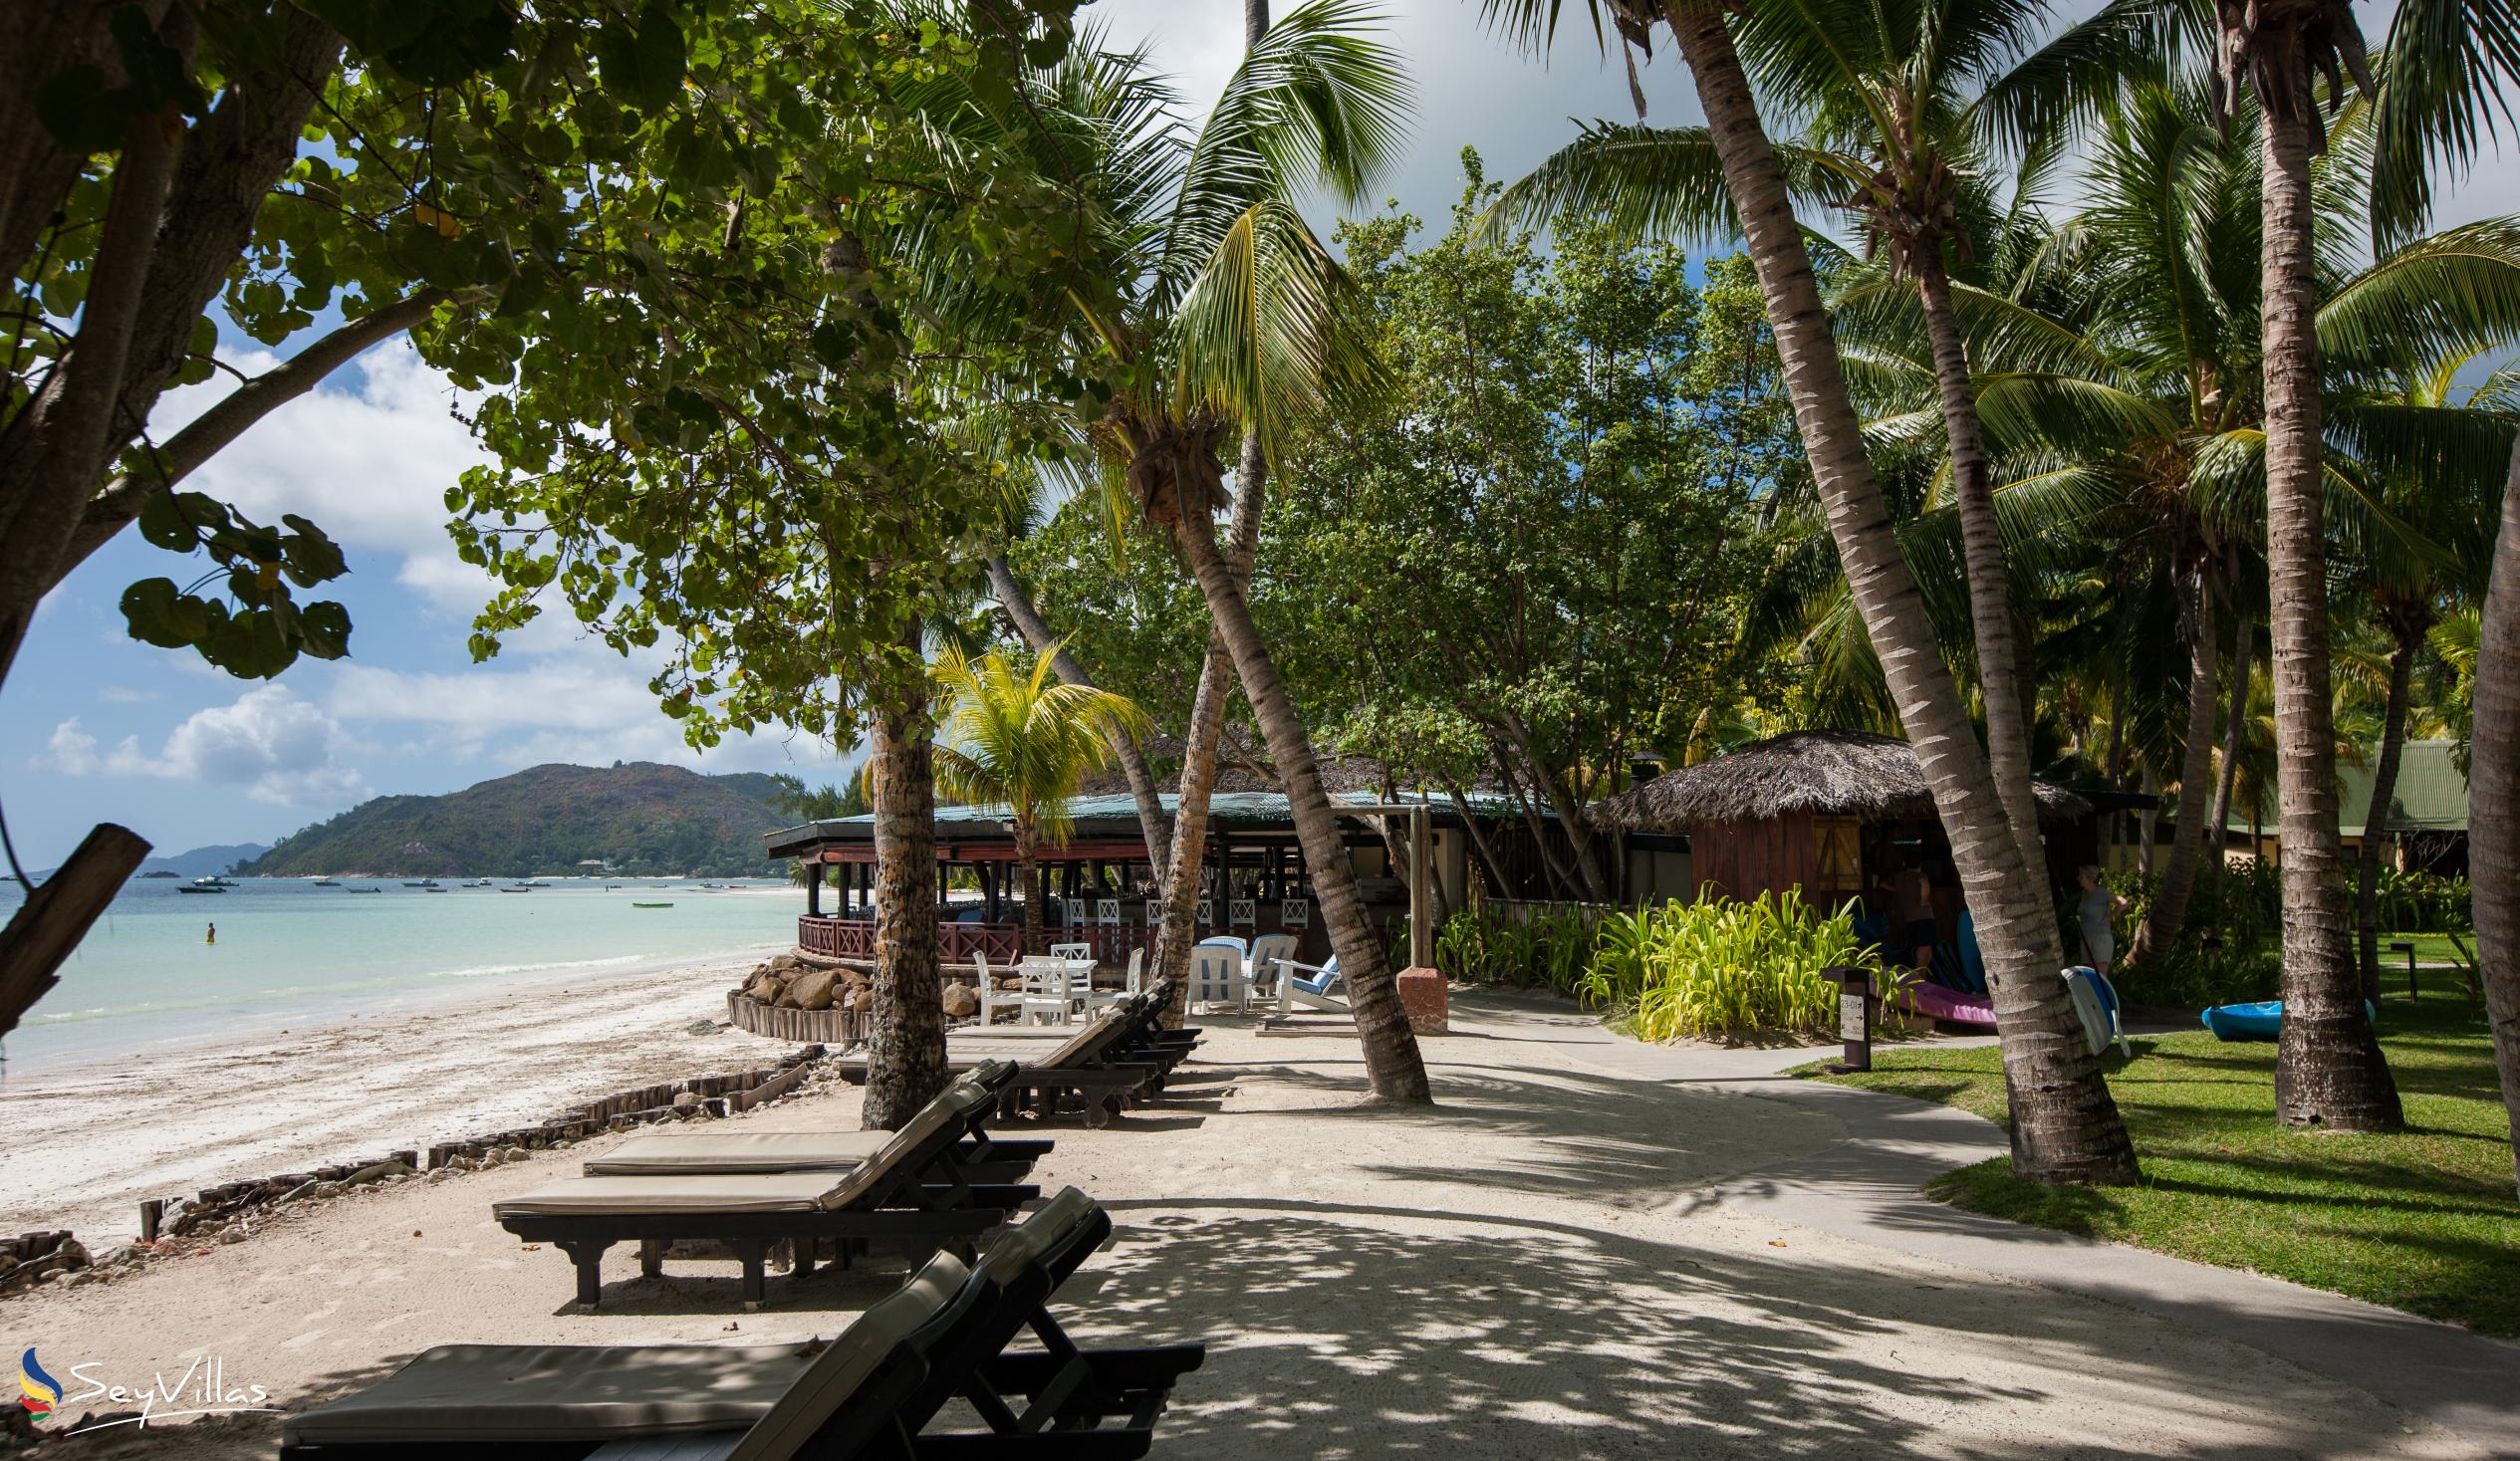 Foto 5: Paradise Sun Hotel - Aussenbereich - Praslin (Seychellen)